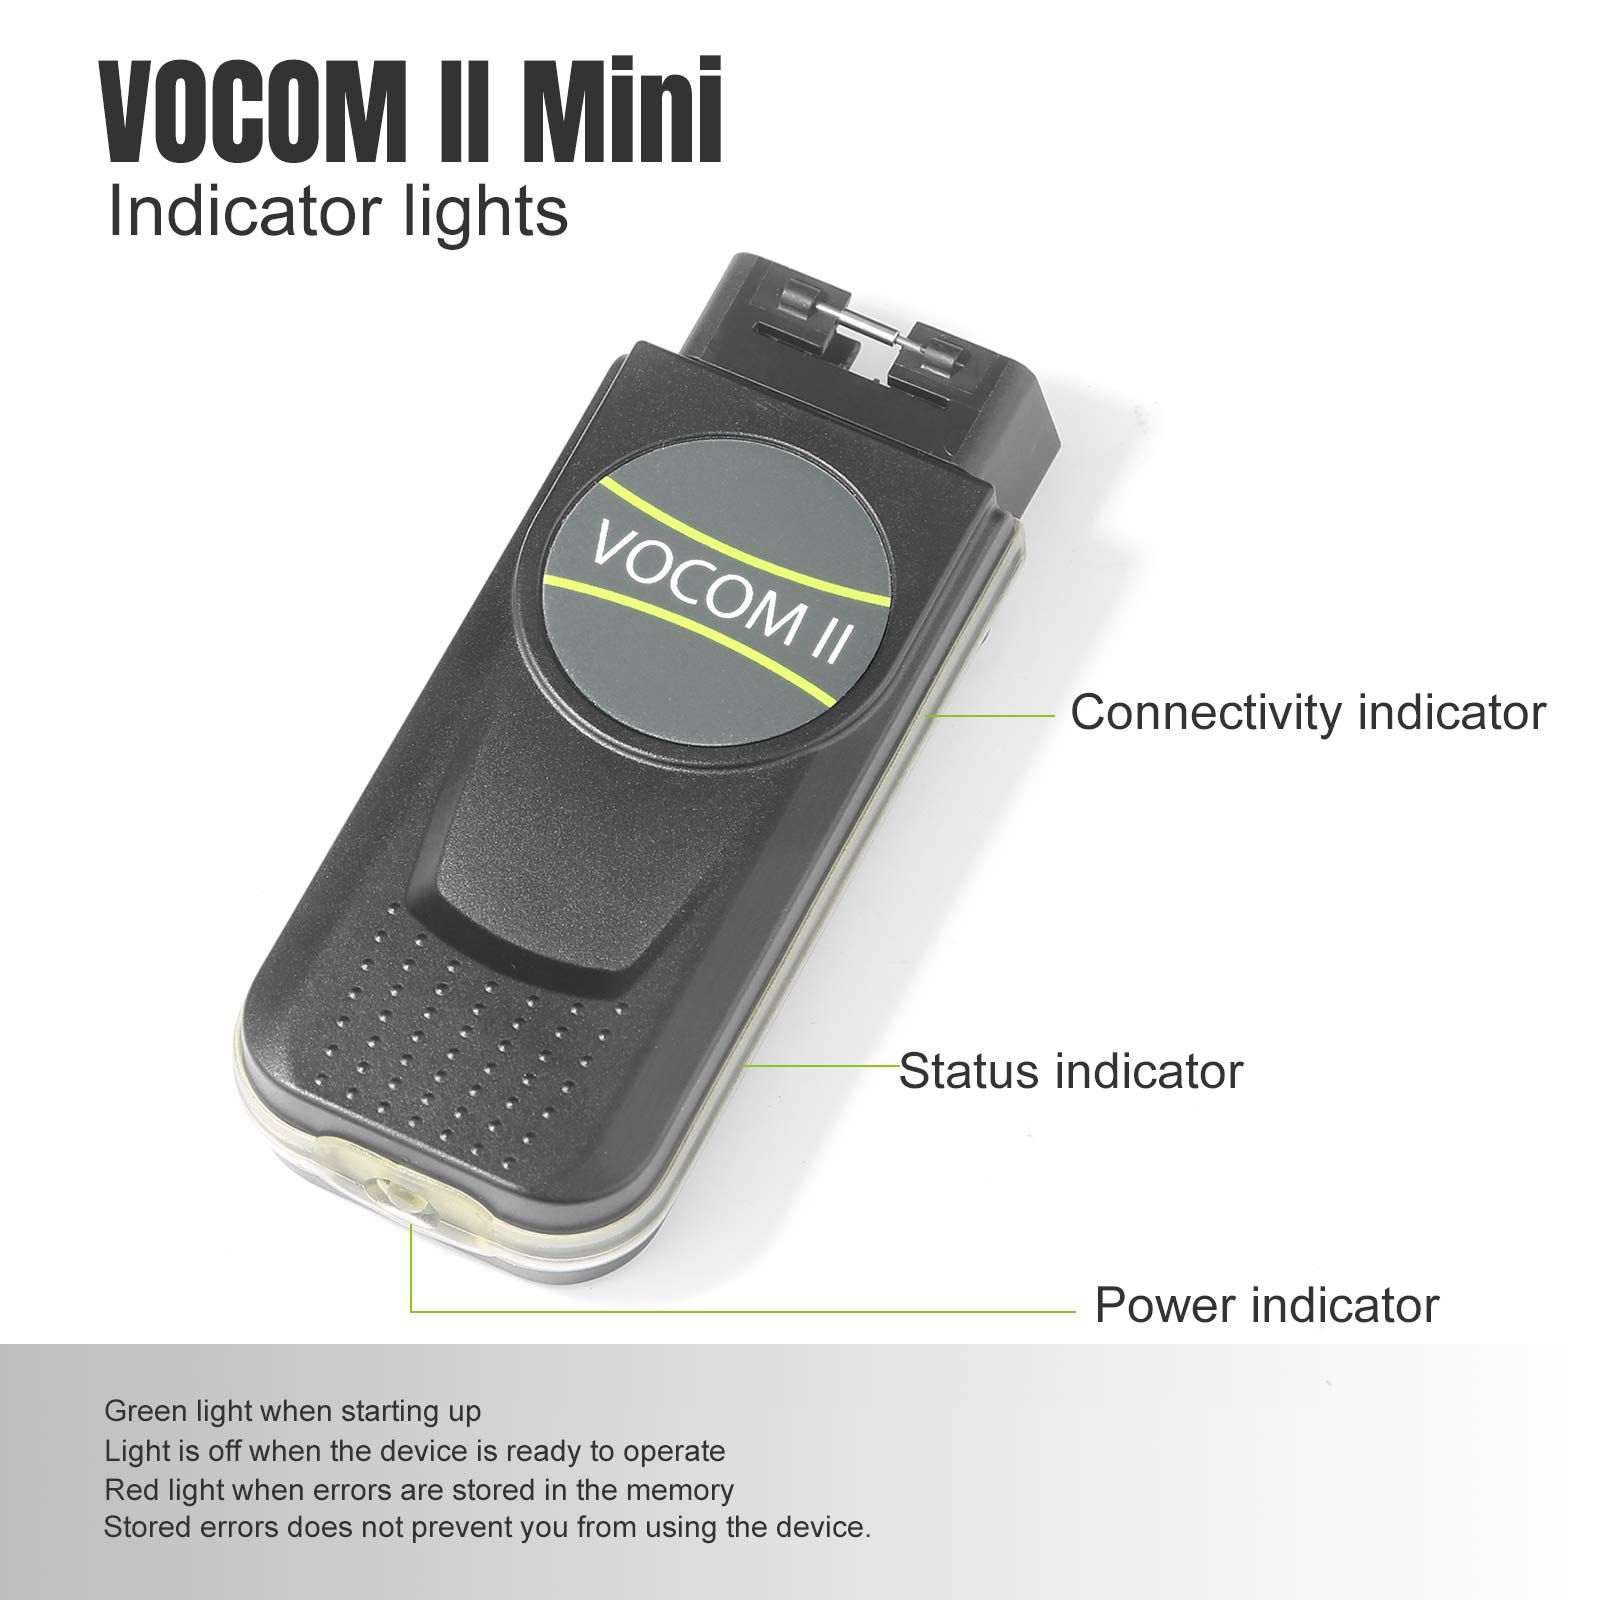 기본 미니 볼보 Vocom II 어댑터 88894200 트럭 진단 도구는 볼보/르노/UD/Mack 트럭의 Wifi 작동을 지원합니다.